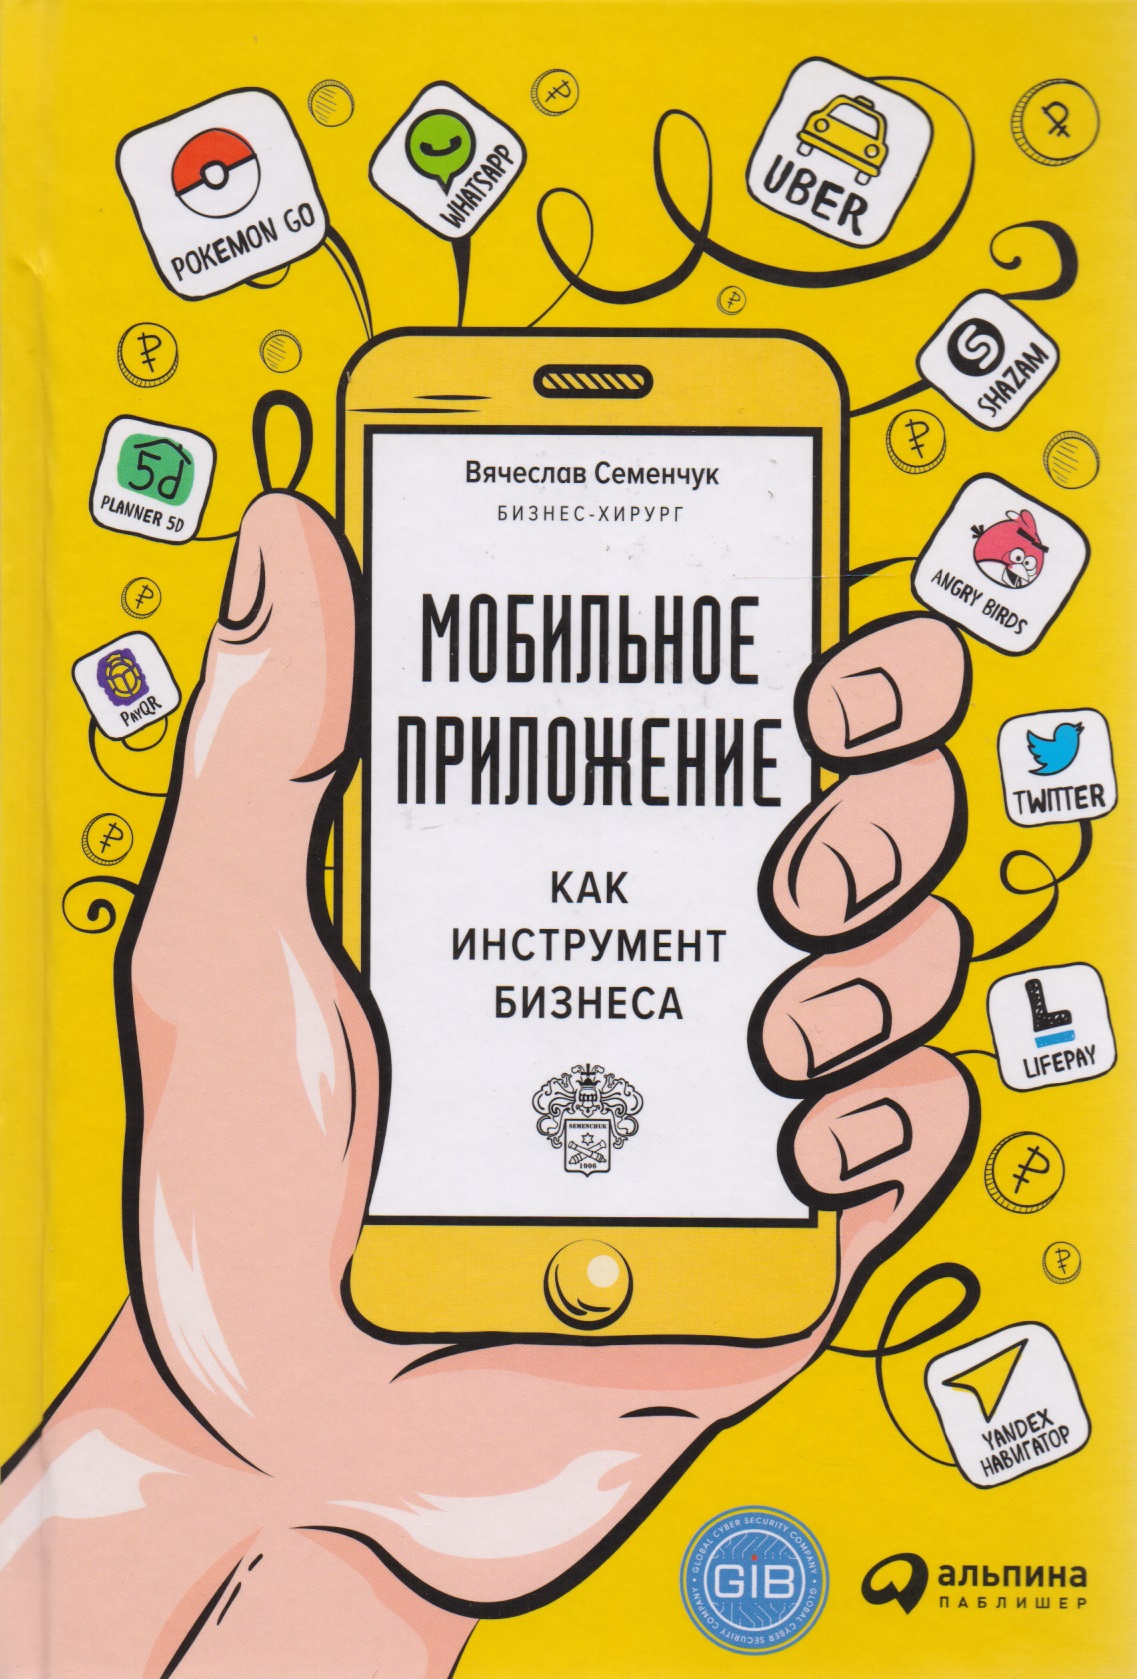 Семенчук Вячеслав - Мобильное приложение как инструмент бизнеса